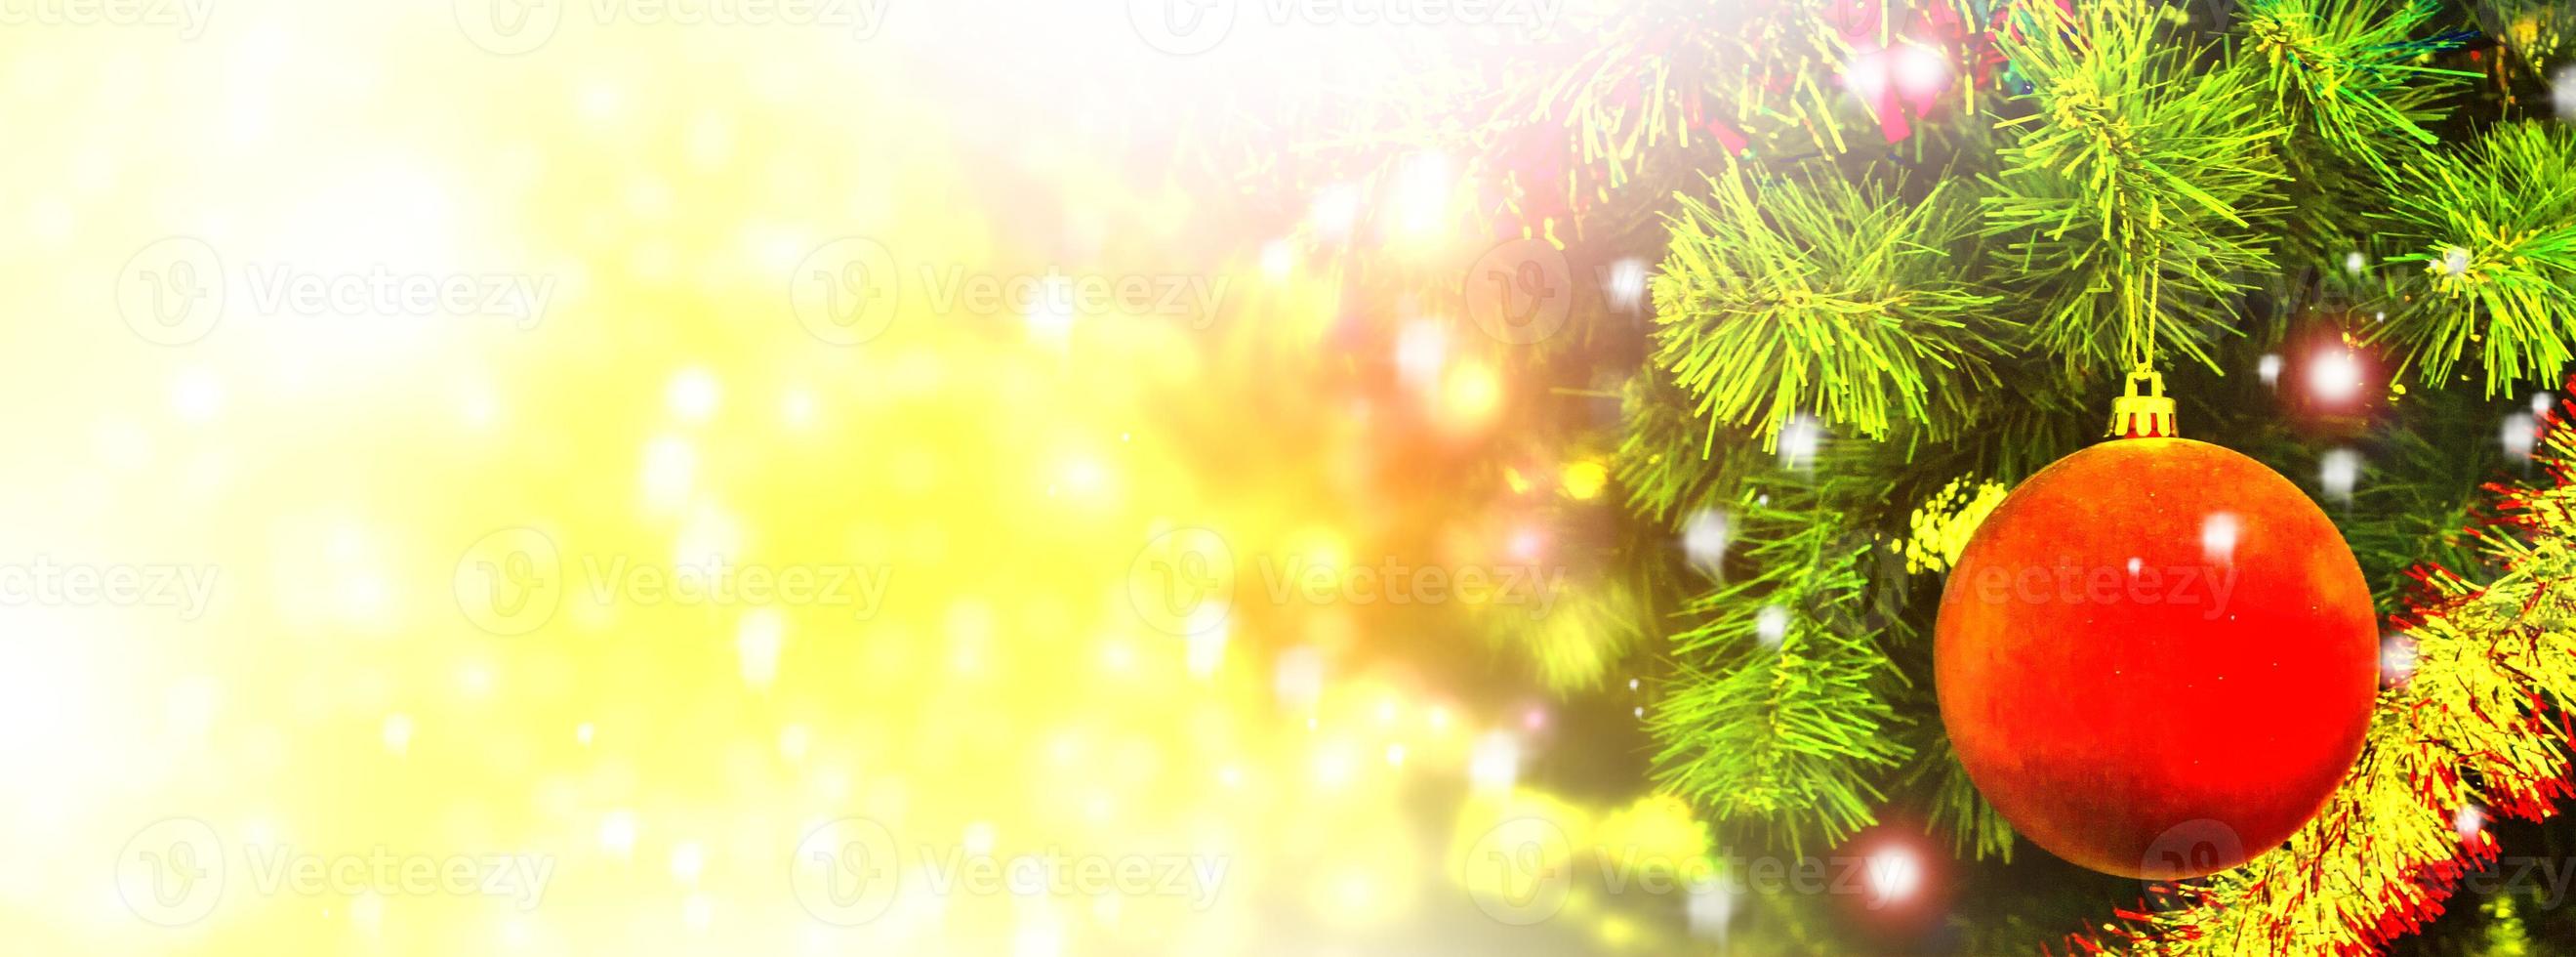 albero di natale decorato con giocattoli luminosi. carta. foto